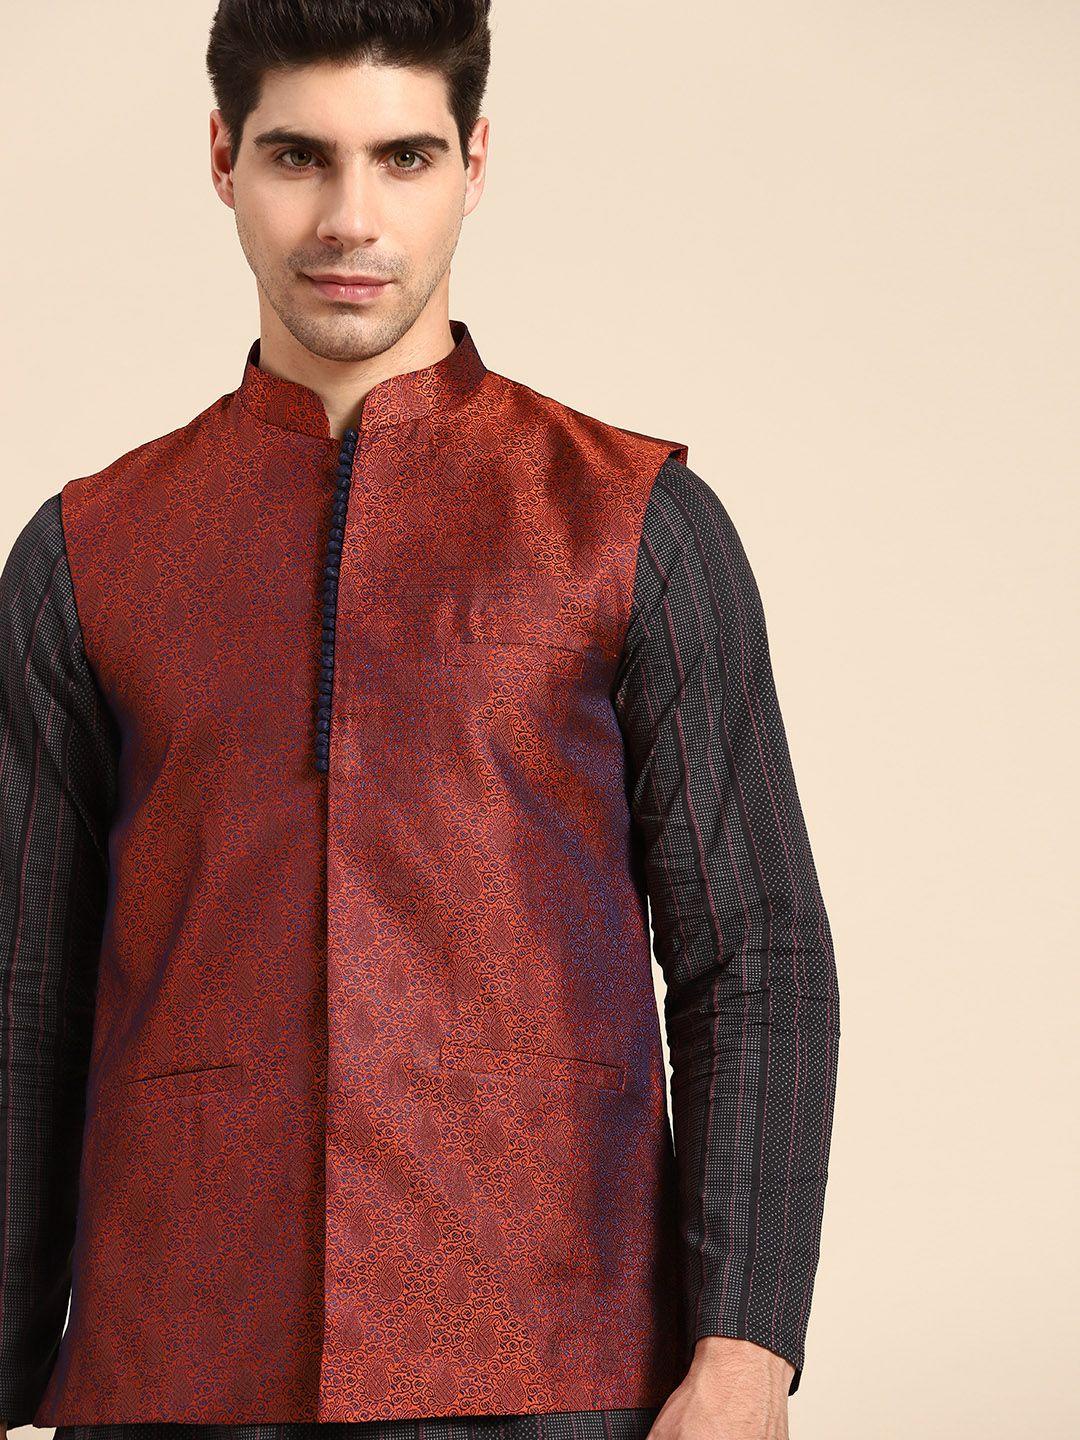 anouk-men-red-ethnic-motif-printed-nehru-jacket-with-pocket-square